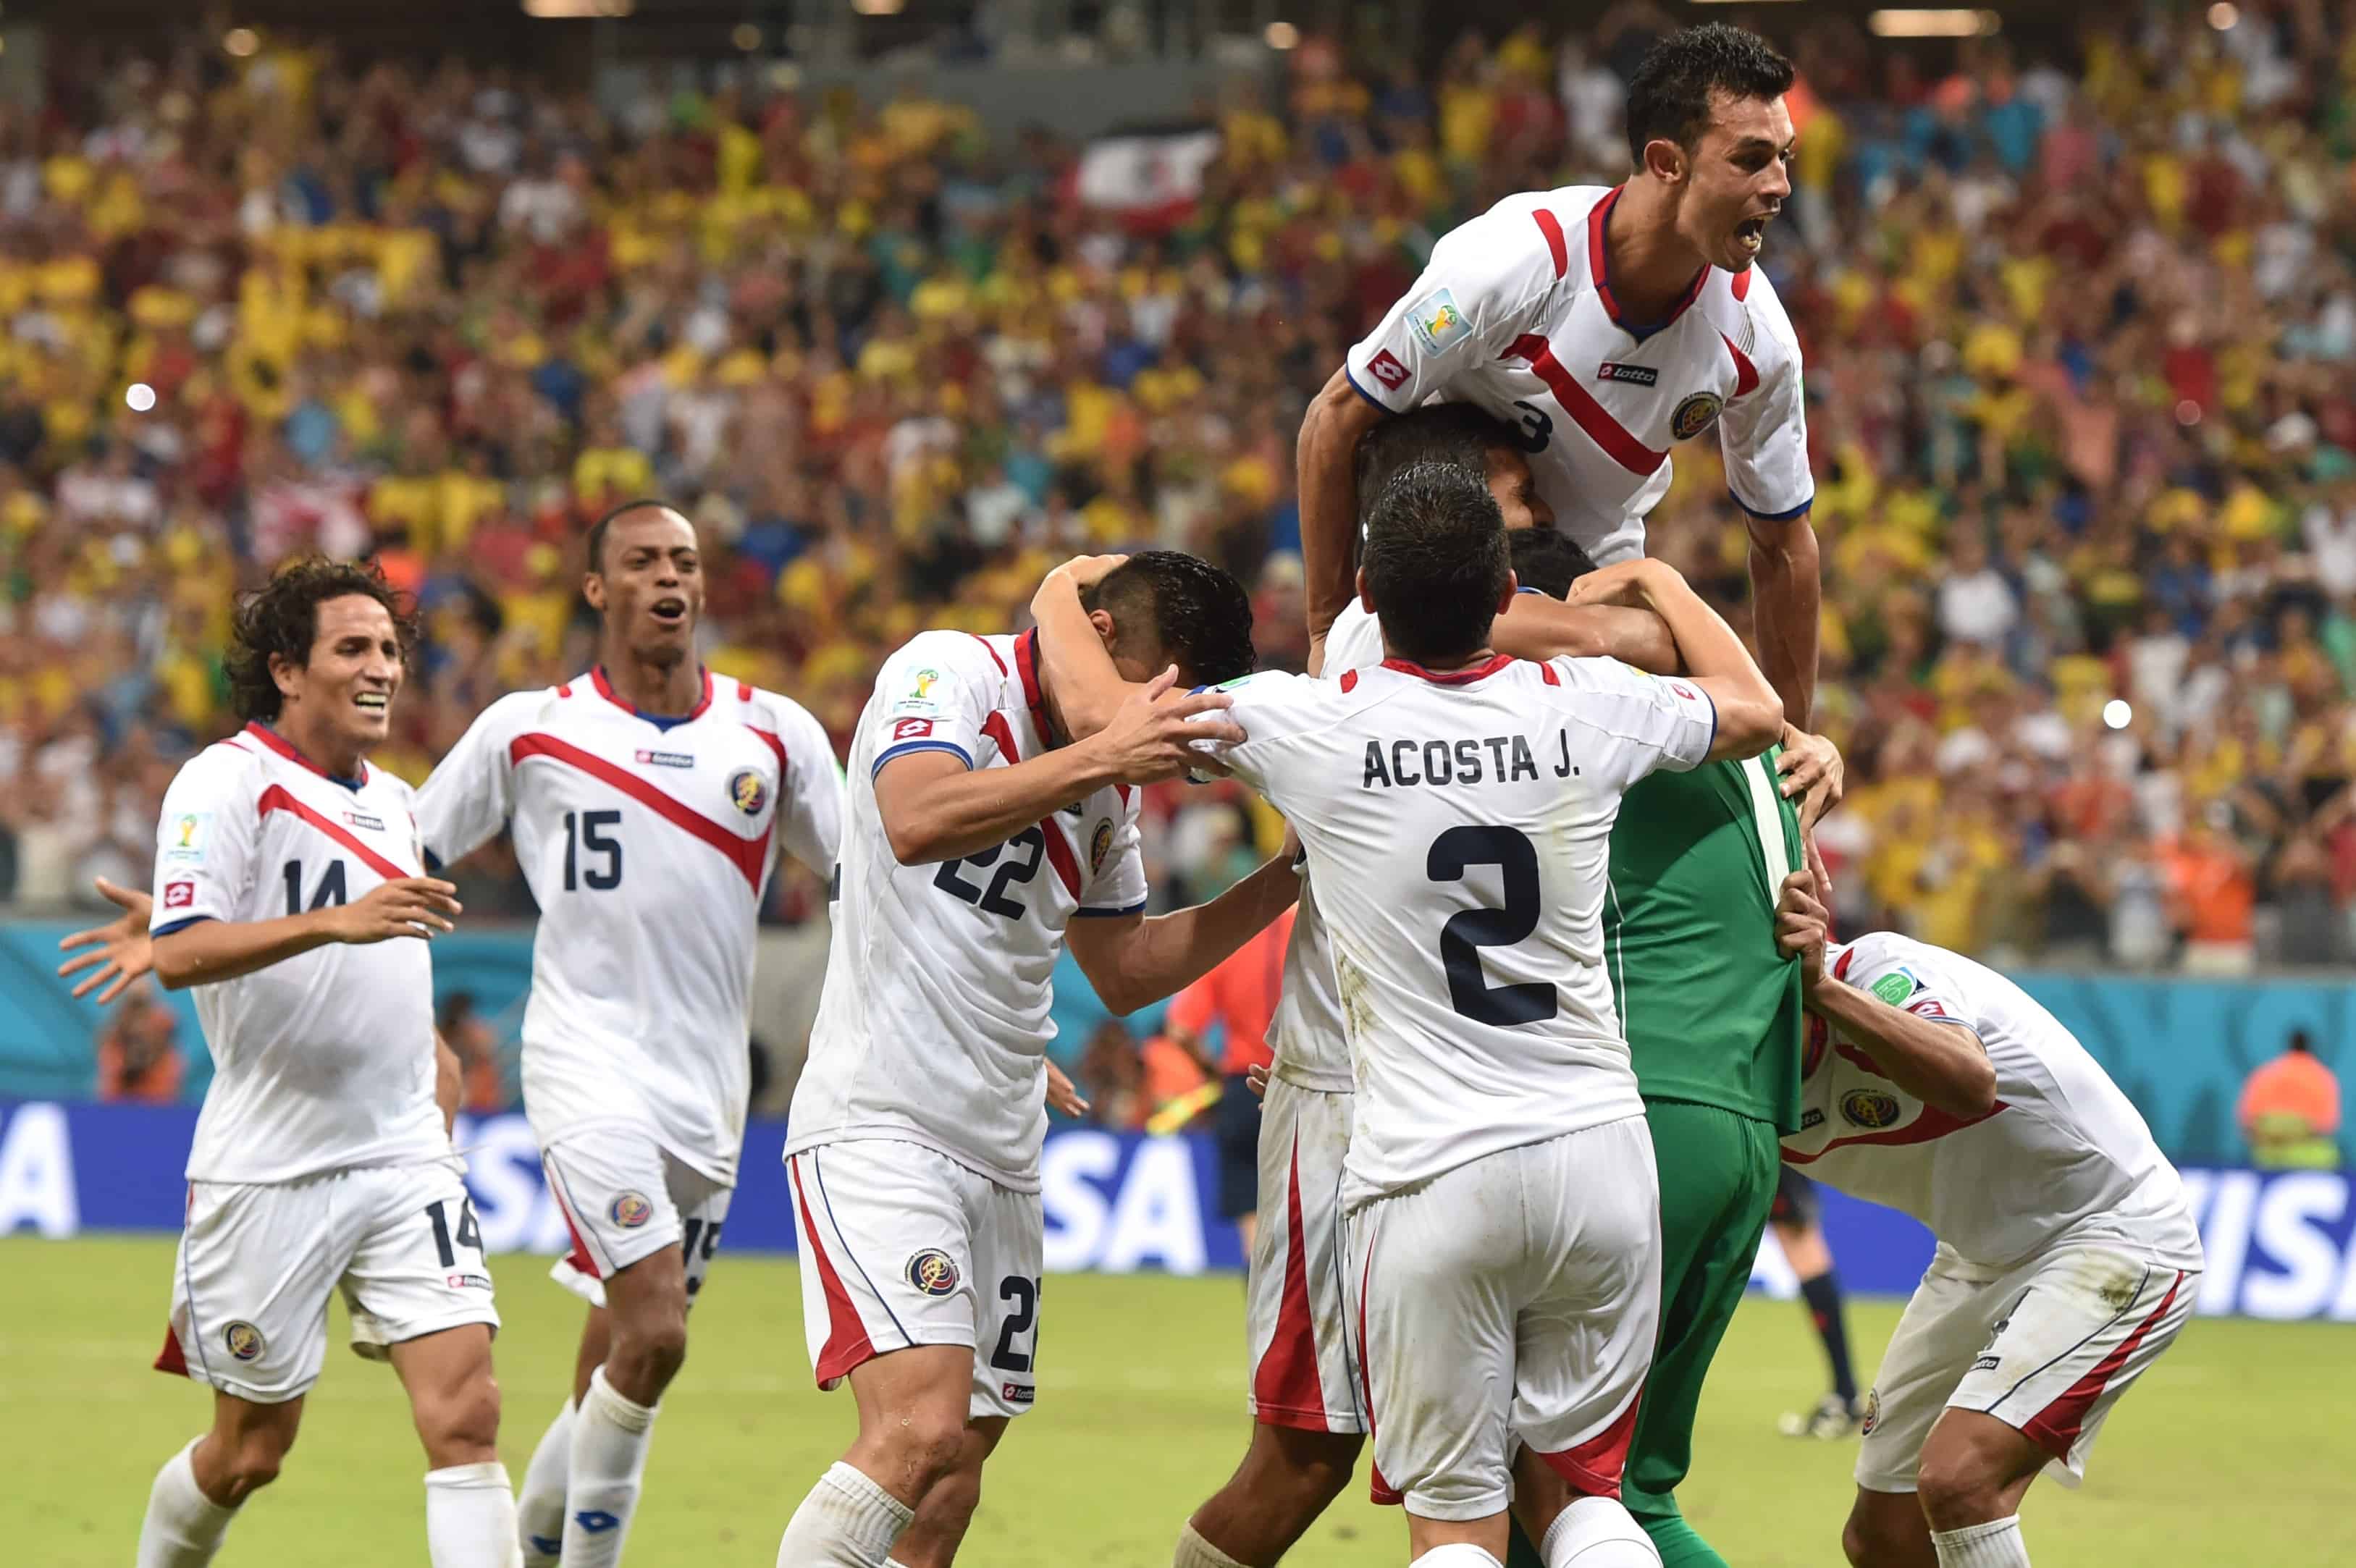 16) A surpreendente Costa Rica foi a líder do grupo D (2V e 1 E), à frente do Uruguai, na Copa de 2014. Nas oitavas, empatou com a Grécia por 1 a 1 e passou nos pênaltis. Já nas quartas, também empatou com a Holanda por 0 a 0, mas acabou eliminada ao perder nas penalidades.